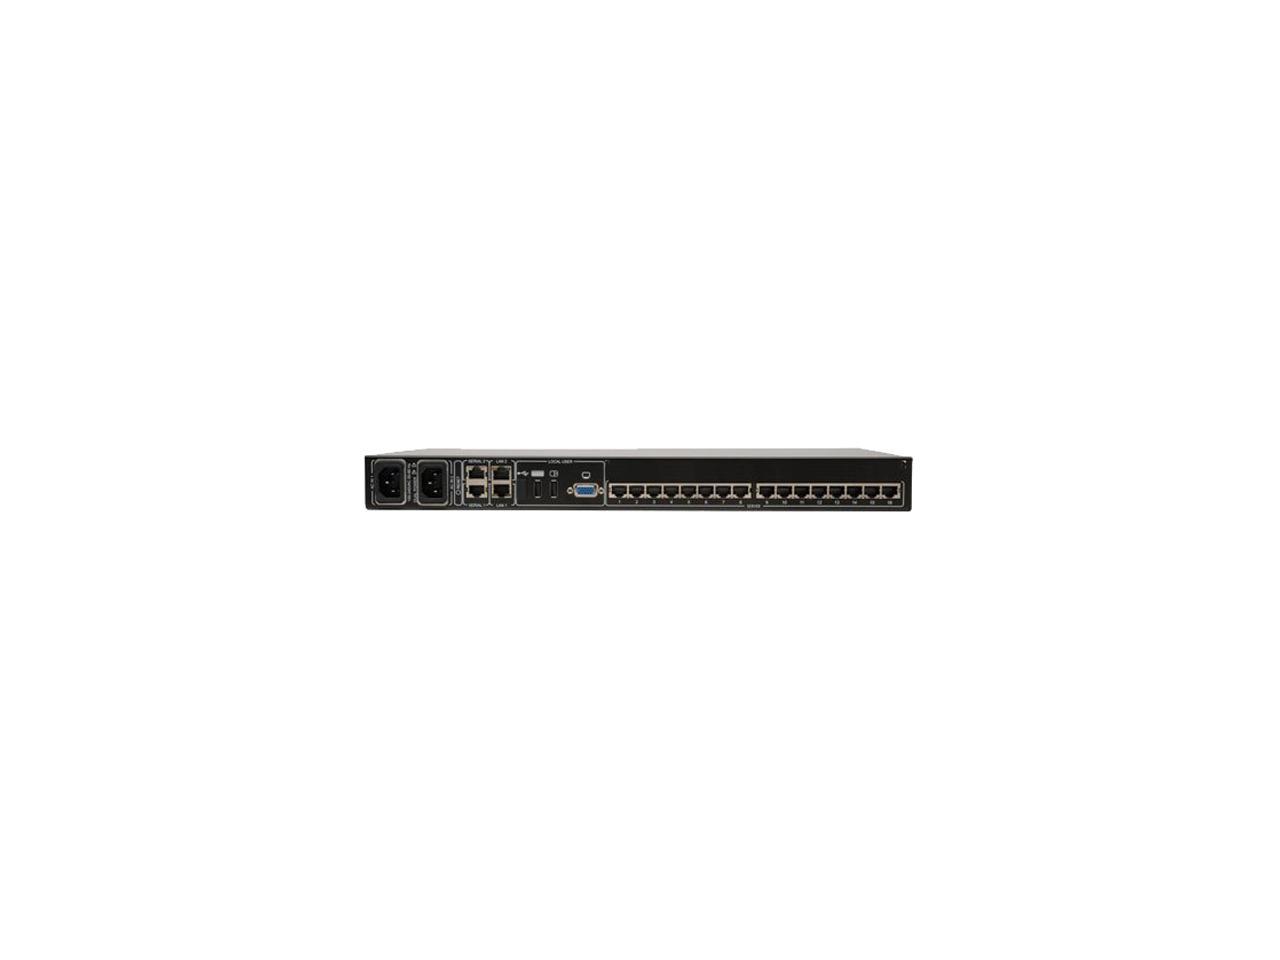 Tripp Lite 16-Port Cat5 1U Rack-Mount KVM Switch with IP Remote Access, 2+1 User, VGA, USB (B072-016-IP2)